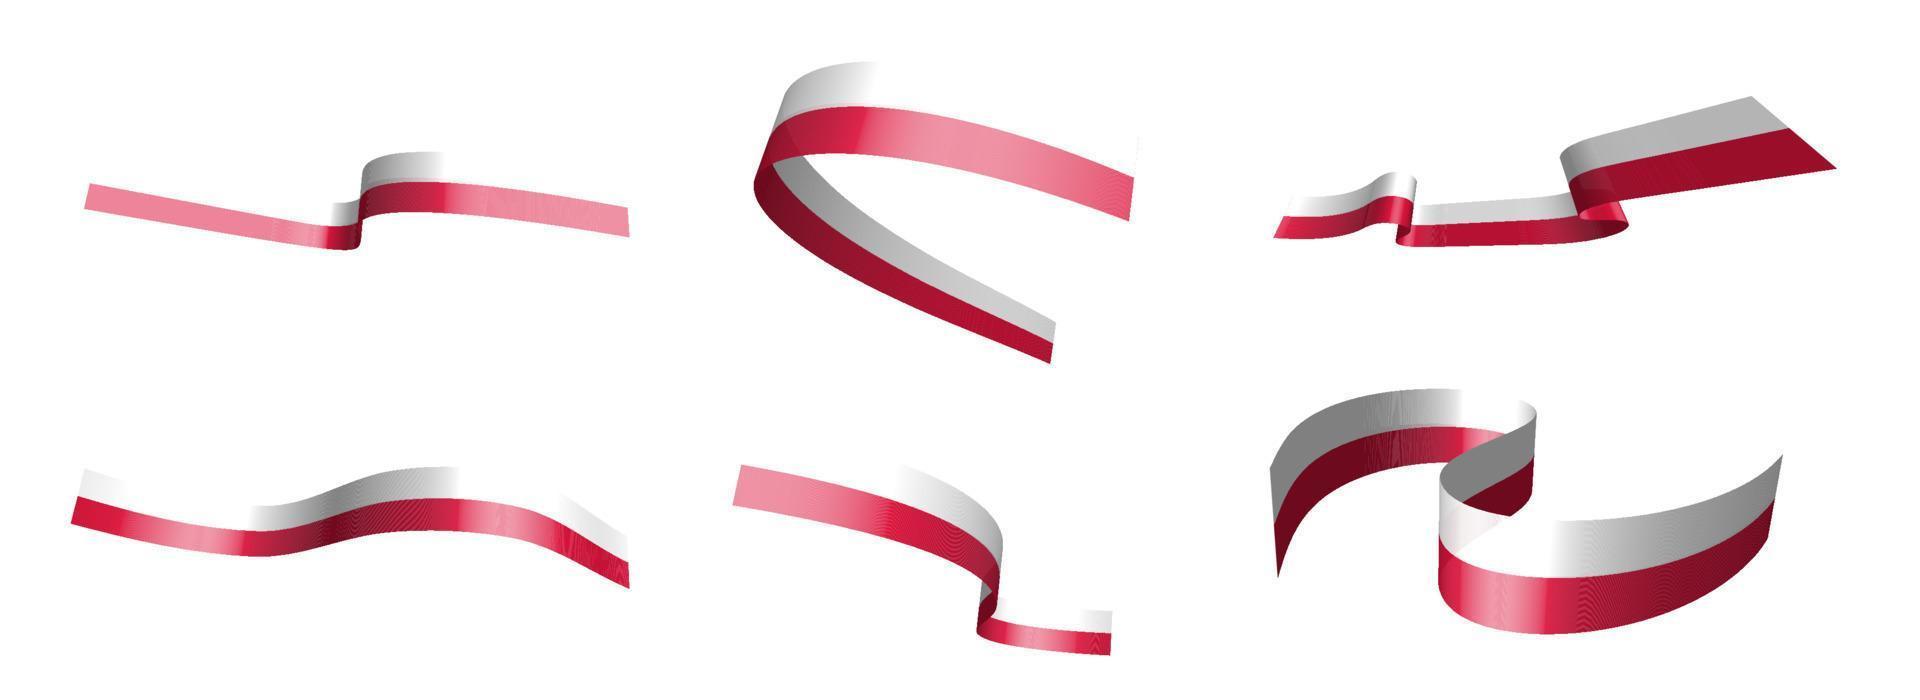 uppsättning semesterband. Polens flagga vajar i vinden. separering i nedre och övre skikt. designelement. vektor på en vit bakgrund